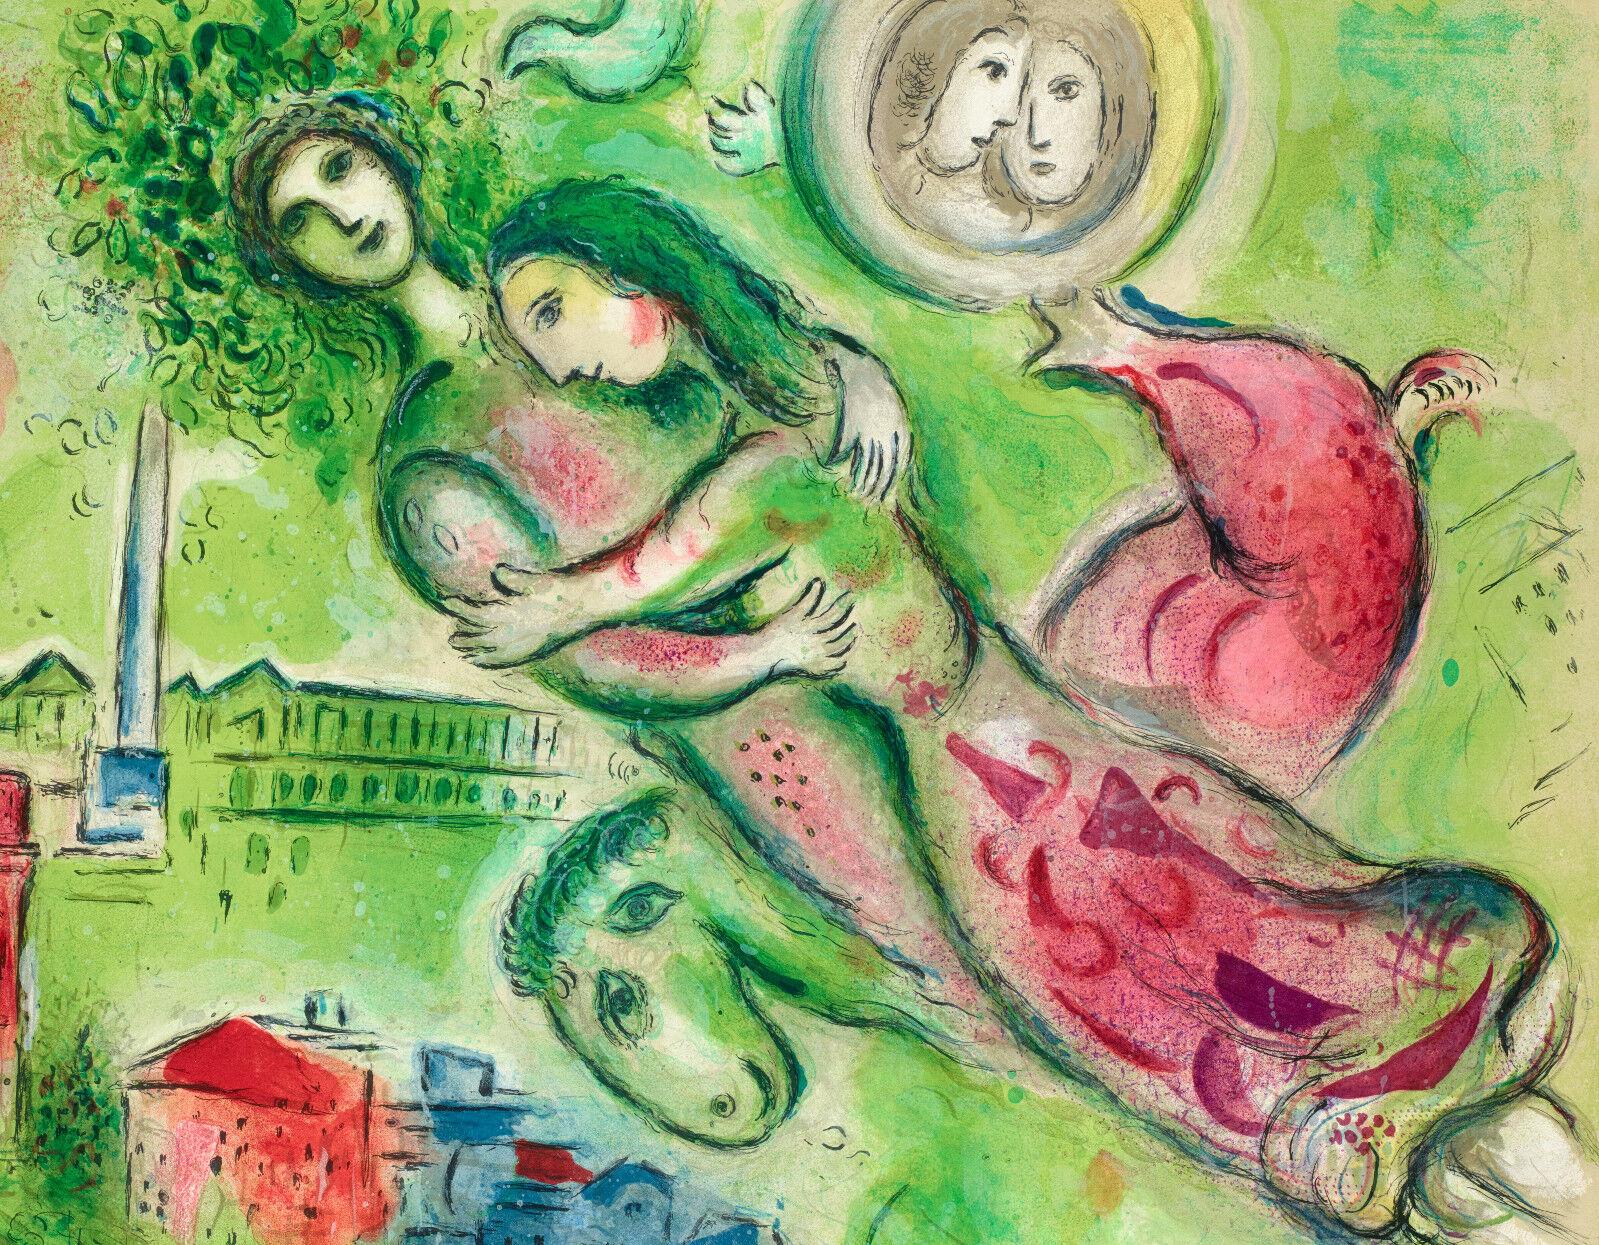 Originalplakat-Marc Chagall-Oper Paris-Romeo und JULIETTE-Liebe, 1964

Dargestellt ist ein Detail der von Marc Chagall gemalten Decke der Opera Garnier: Romeo und Julia.

Zusätzliche Details:

Größe (B x H): 25,2 x 38,6 in / 64 x 98,1